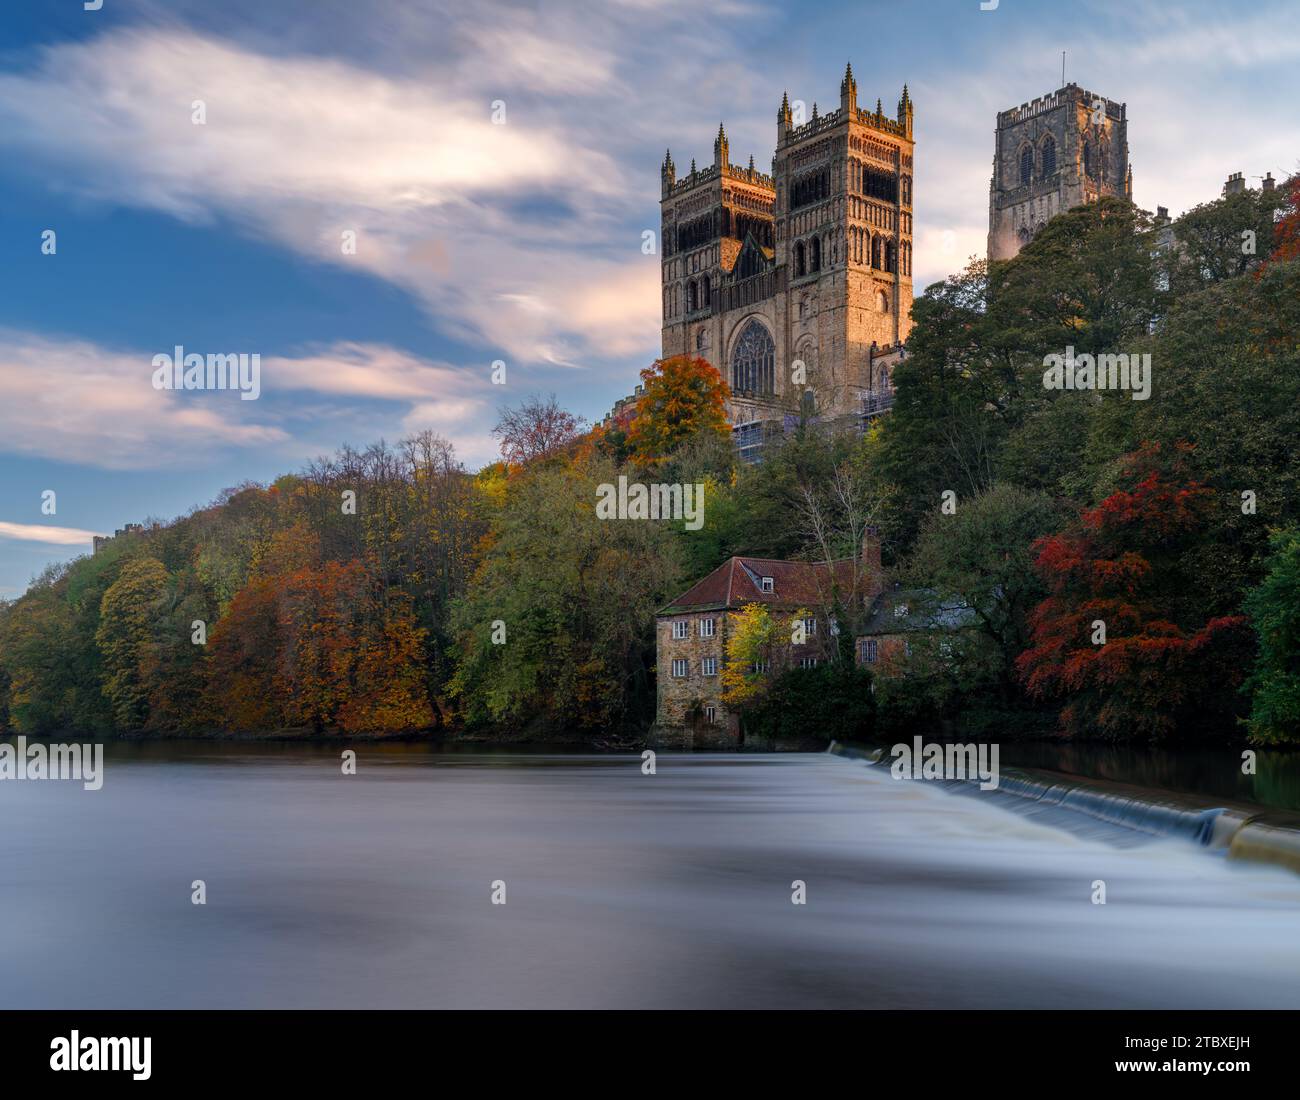 Vue classique de la cathédrale de Durham et du déversoir sur la rivière en automne en utilisant une vitesse d'obturation lente Banque D'Images